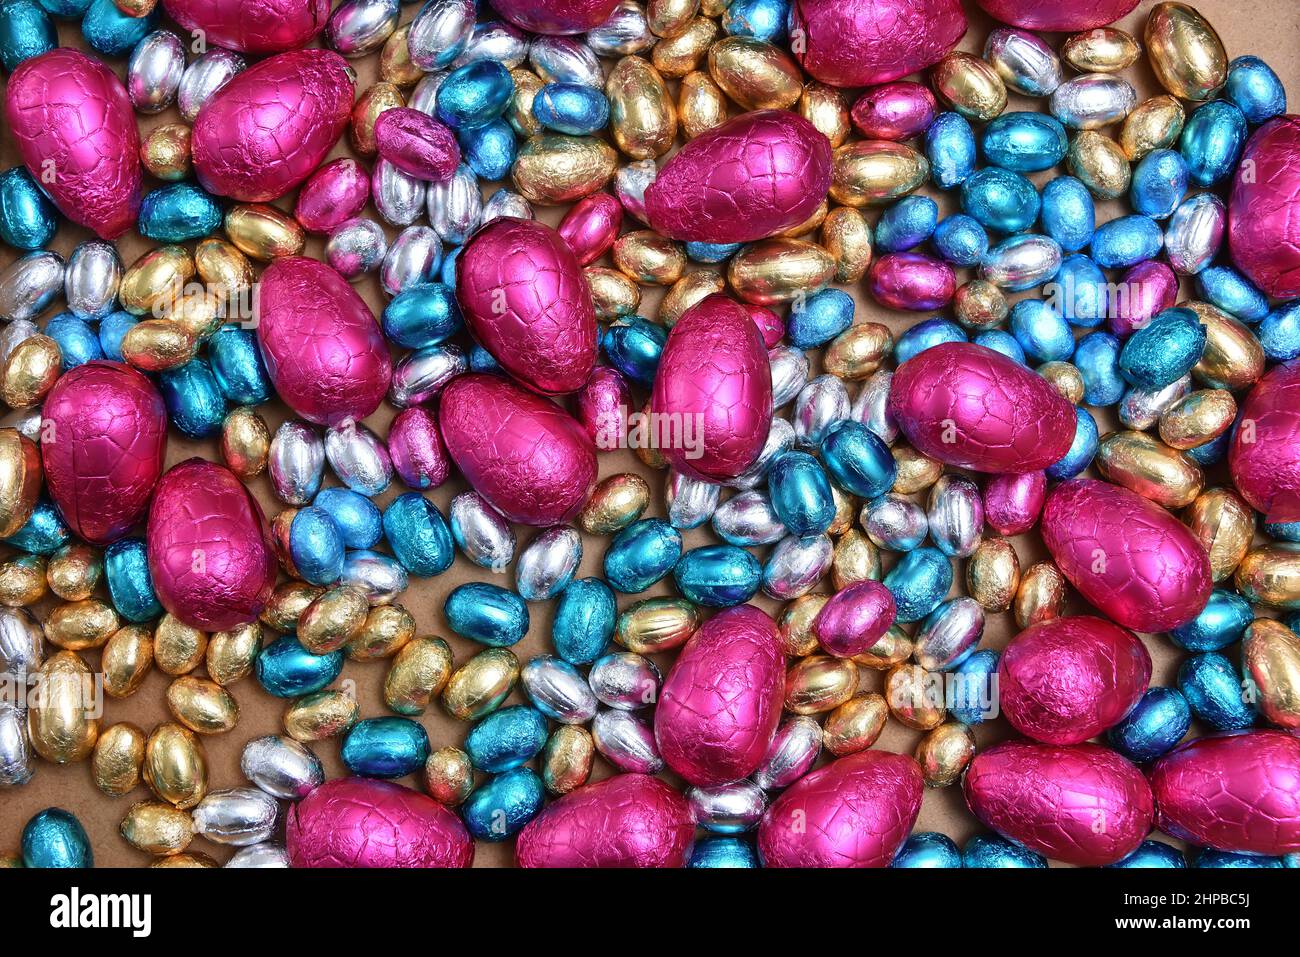 Petits œufs de pâques en papier d'aluminium rose, bleu, argent et or, avec de gros œufs roses sur fond de bois pâle. Banque D'Images